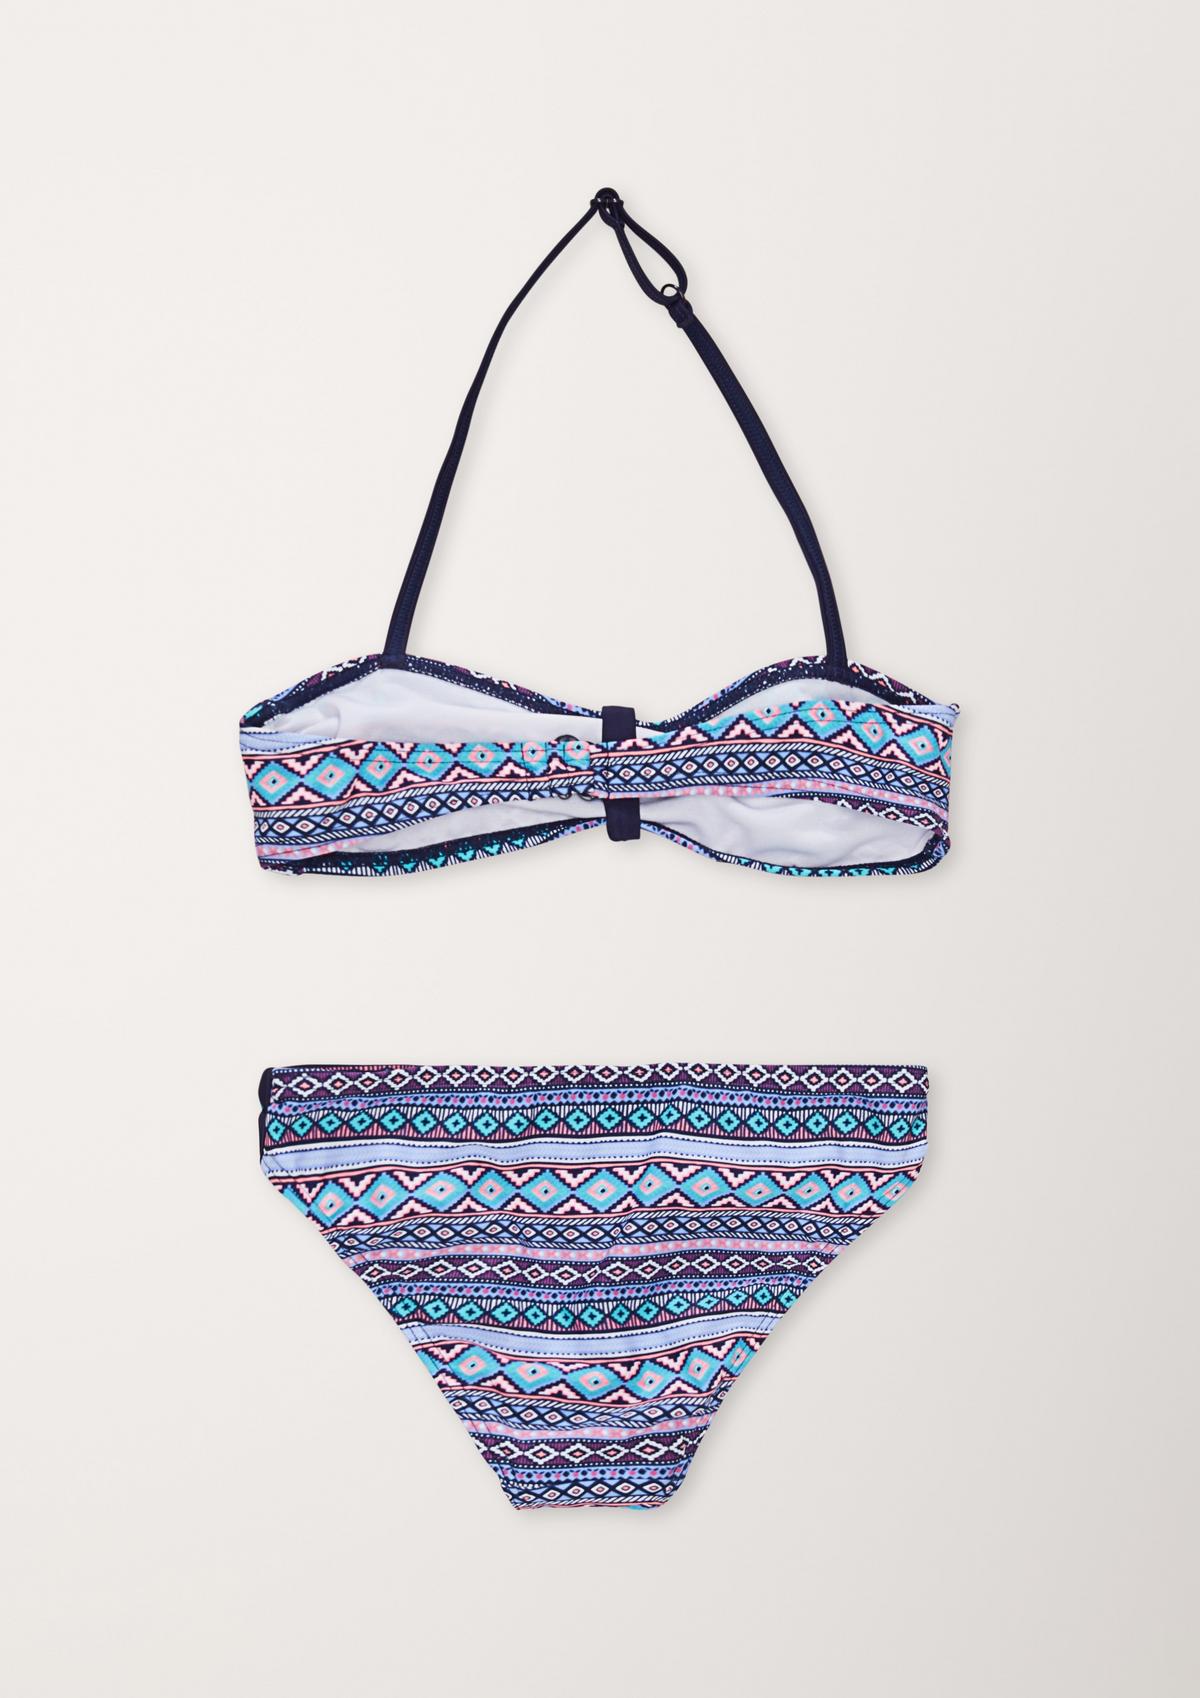 Bandeau-Bikini mit Ethno-Muster - ozeanblau